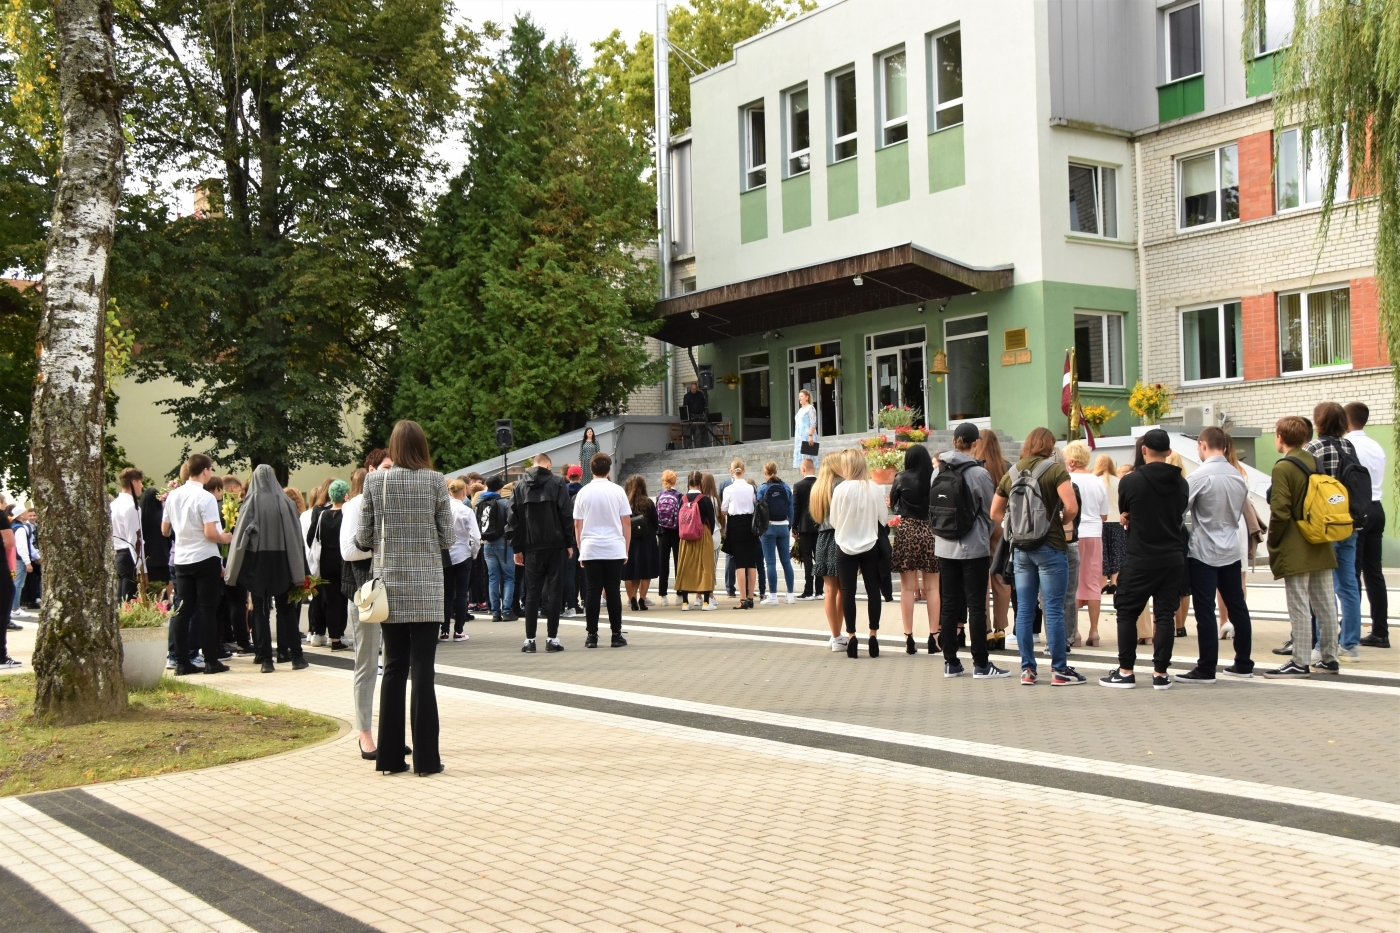 Jelgavas novada izglītības iestādēs, kas kopumā jaunizveidotajā novadā ir 29, šodien skolēni atzīmēja 1. septembri.   Lai visiem izdevies, veselīgs un veiksmes piepildīts mācību gads!